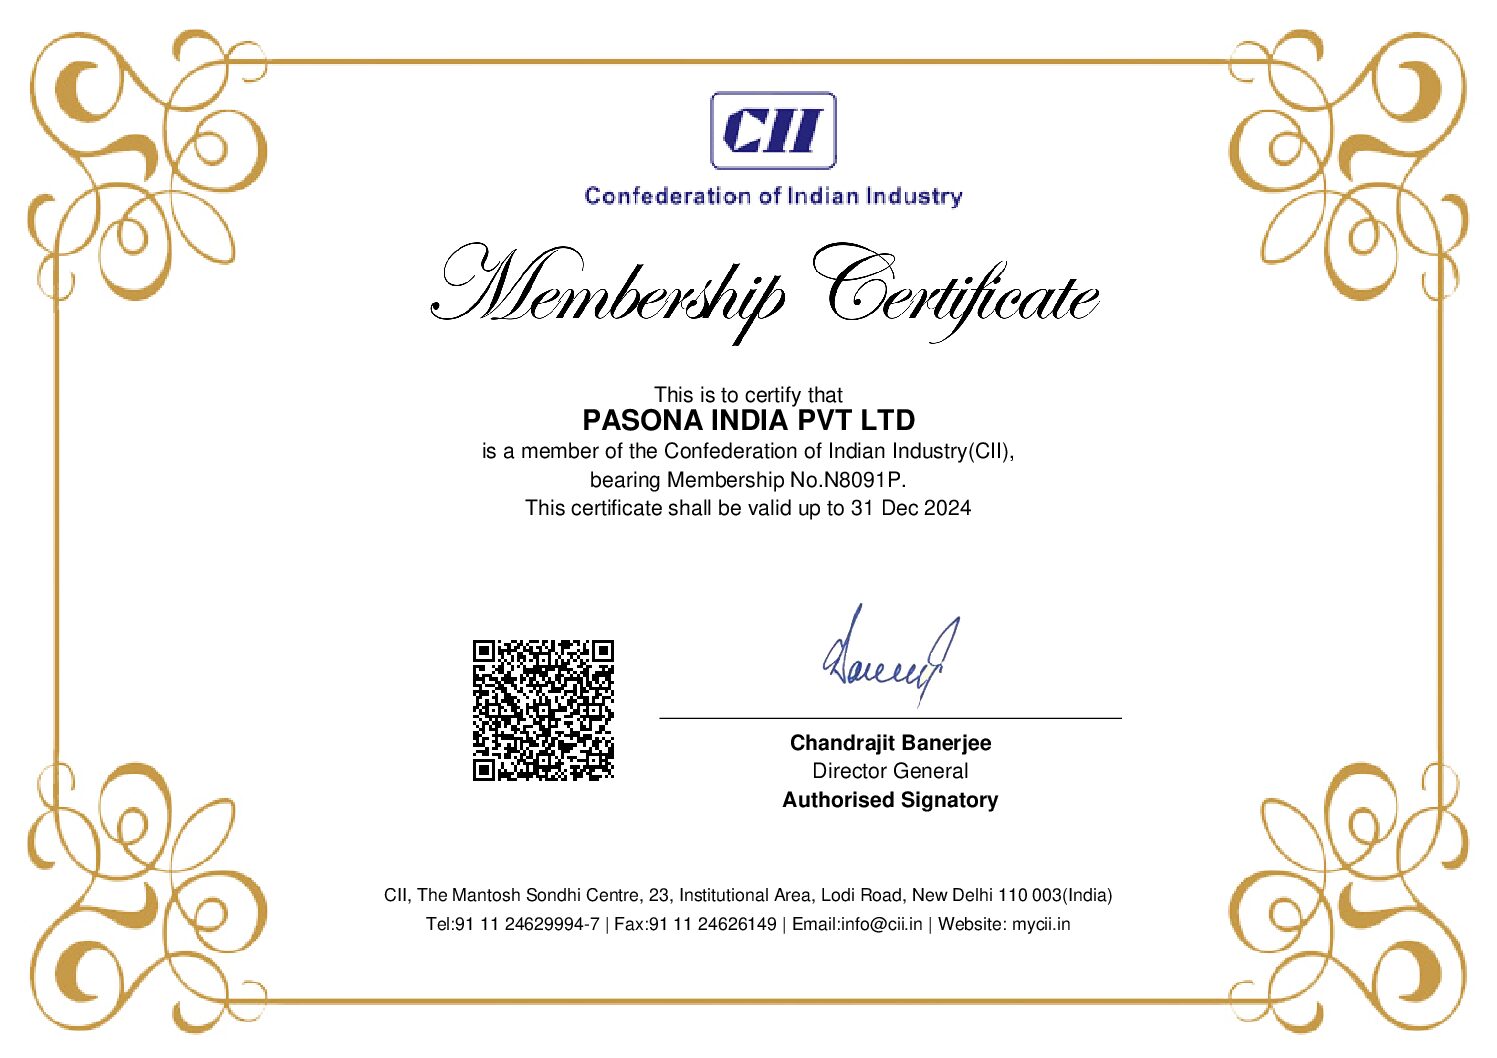 CII Membership Certificate